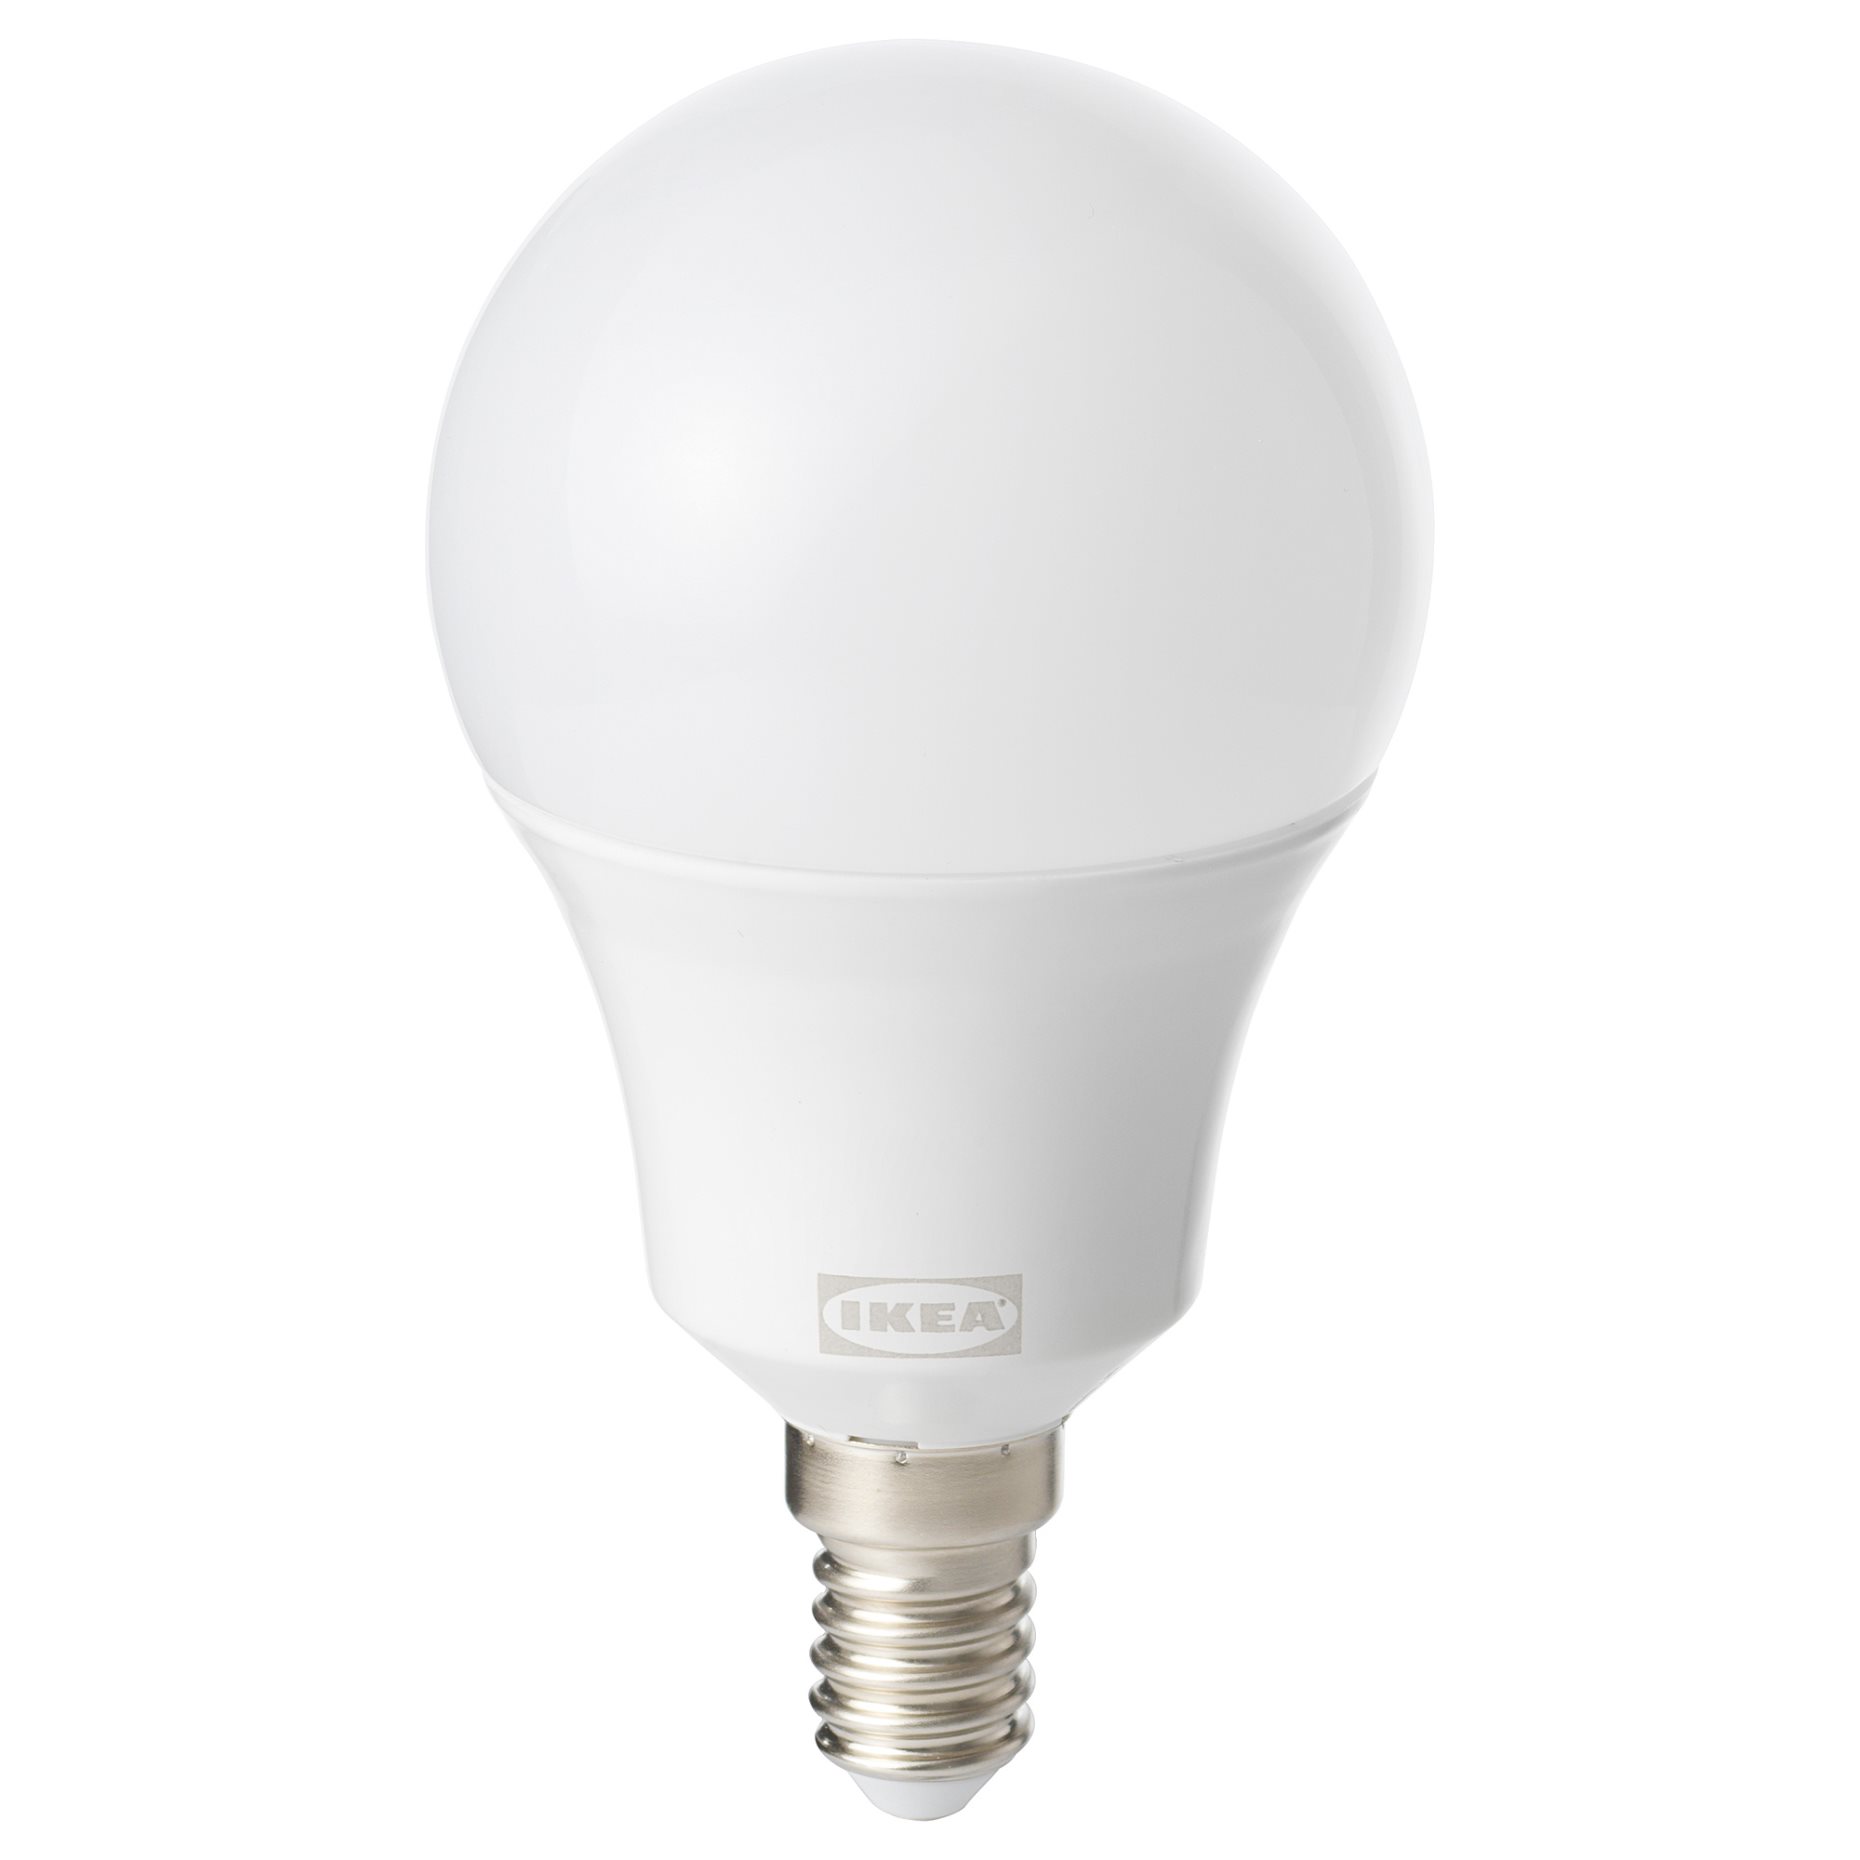 TRÅDFRI, λαμπτήρας LED E14 470 lumen ασύρματης ρύθμισης λευκό φάσμα/γλόμπος, 504.867.87